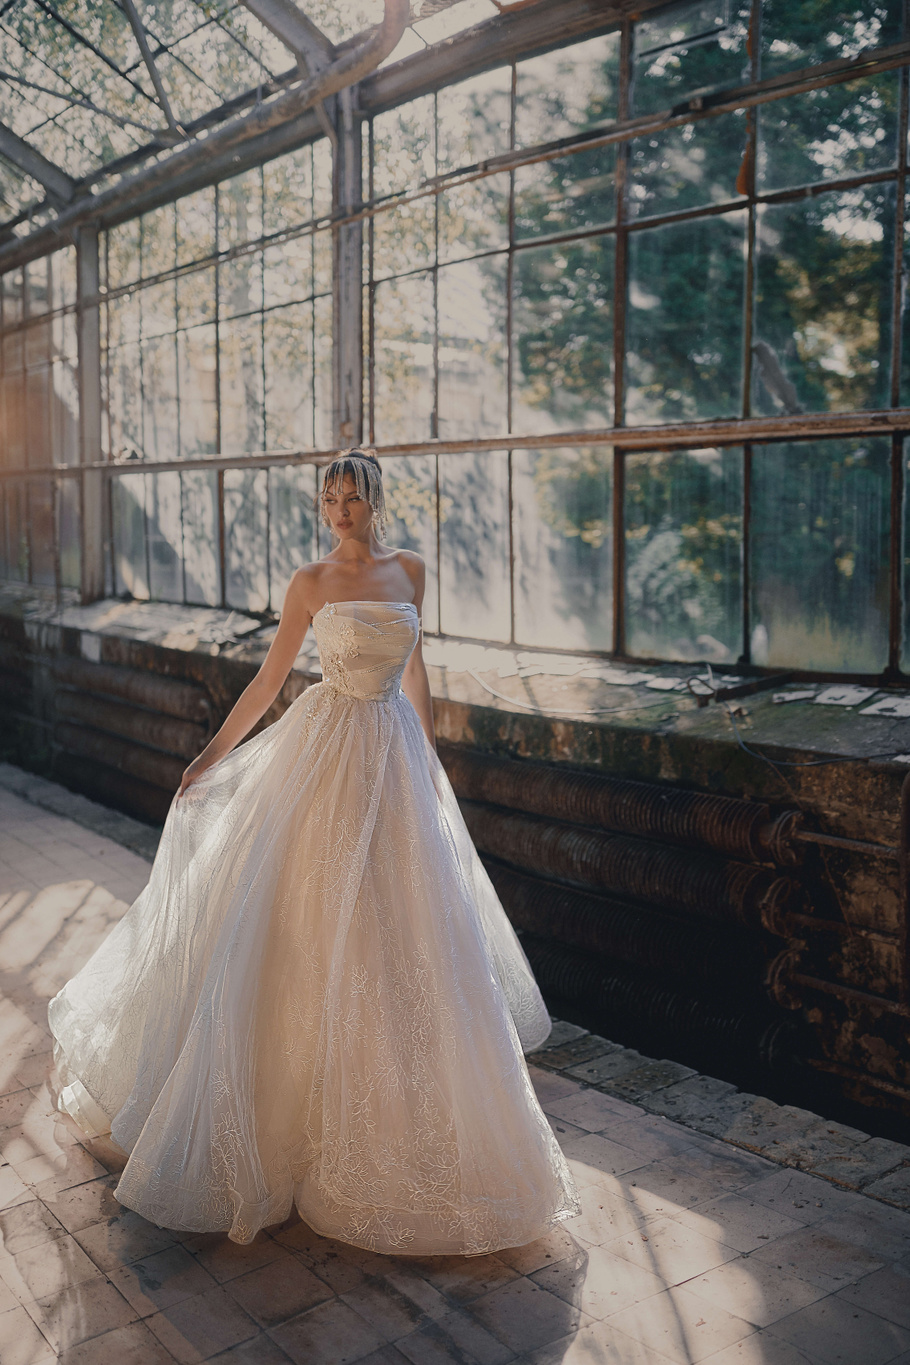 Купить свадебное платье «Лизэт» Анже Этуаль из коллекции Леди Перл 2021 года в салоне «Мэри Трюфель»